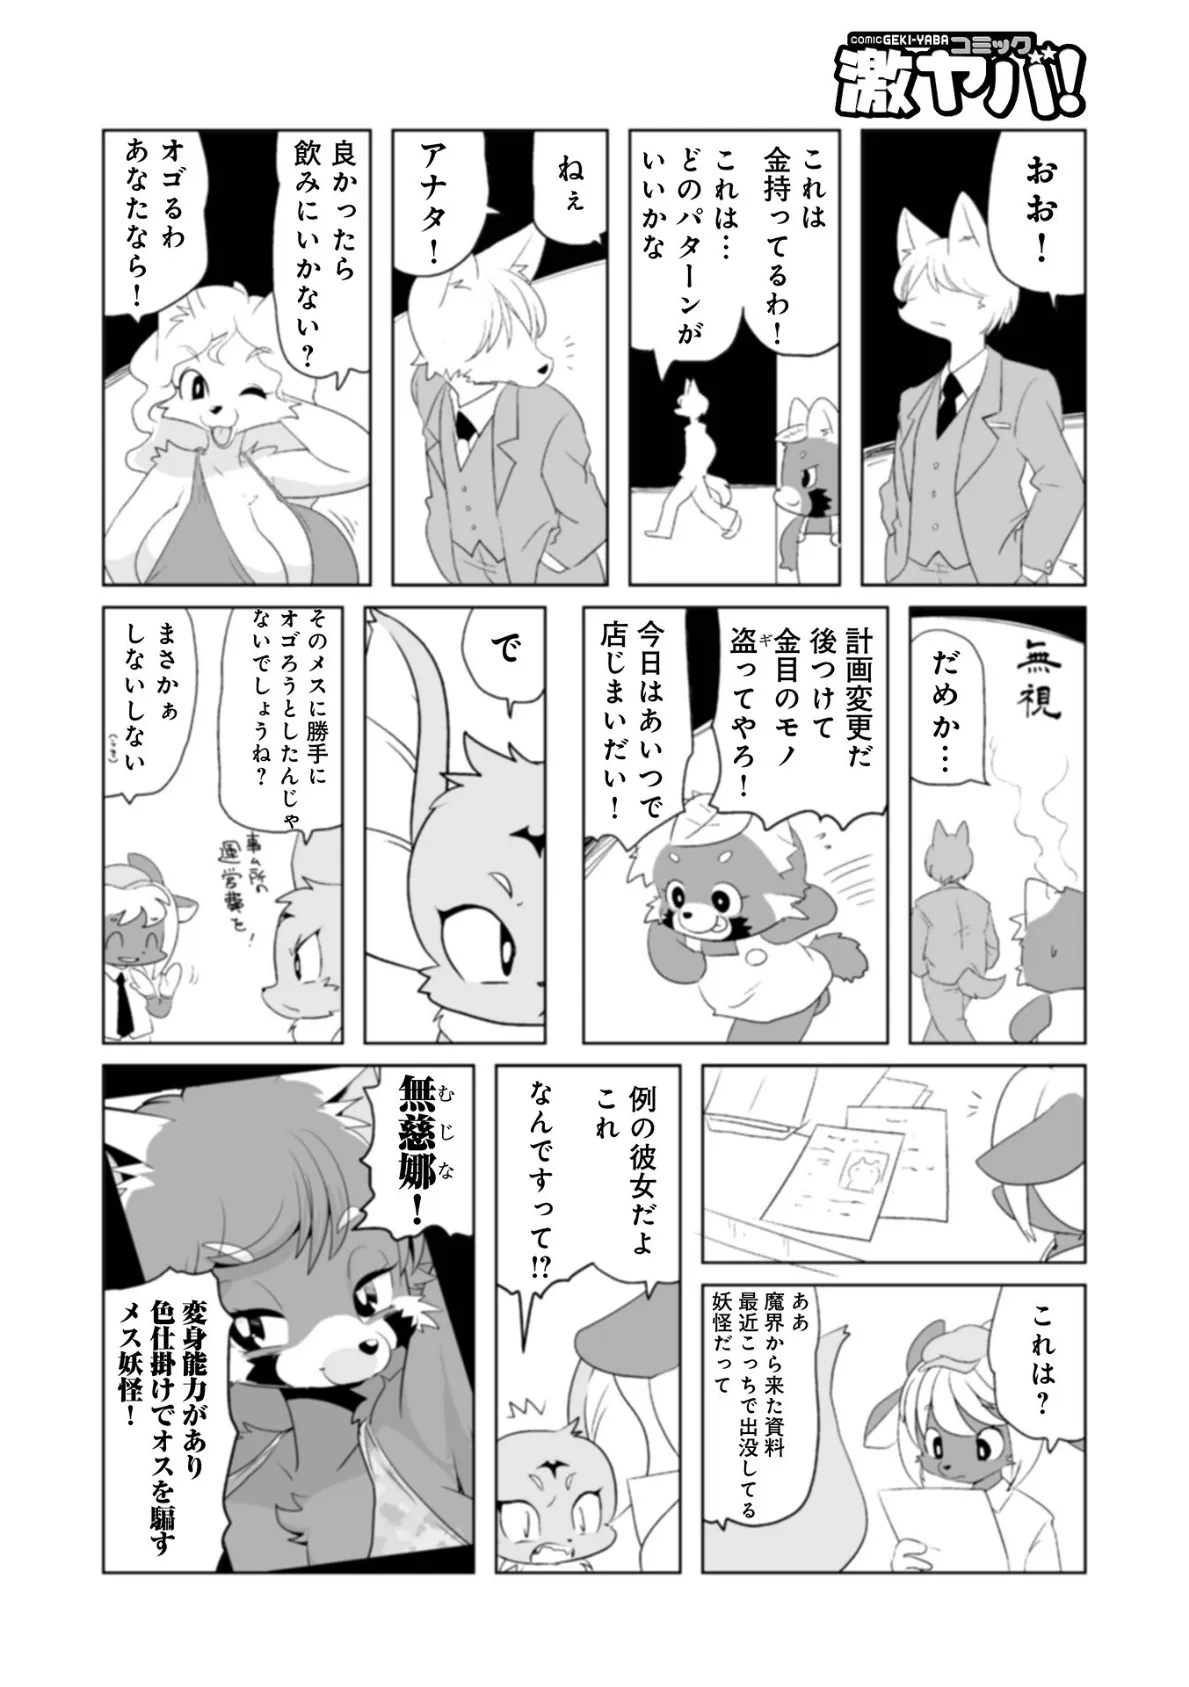 魔界探偵サバトくん第1巻 54ページ